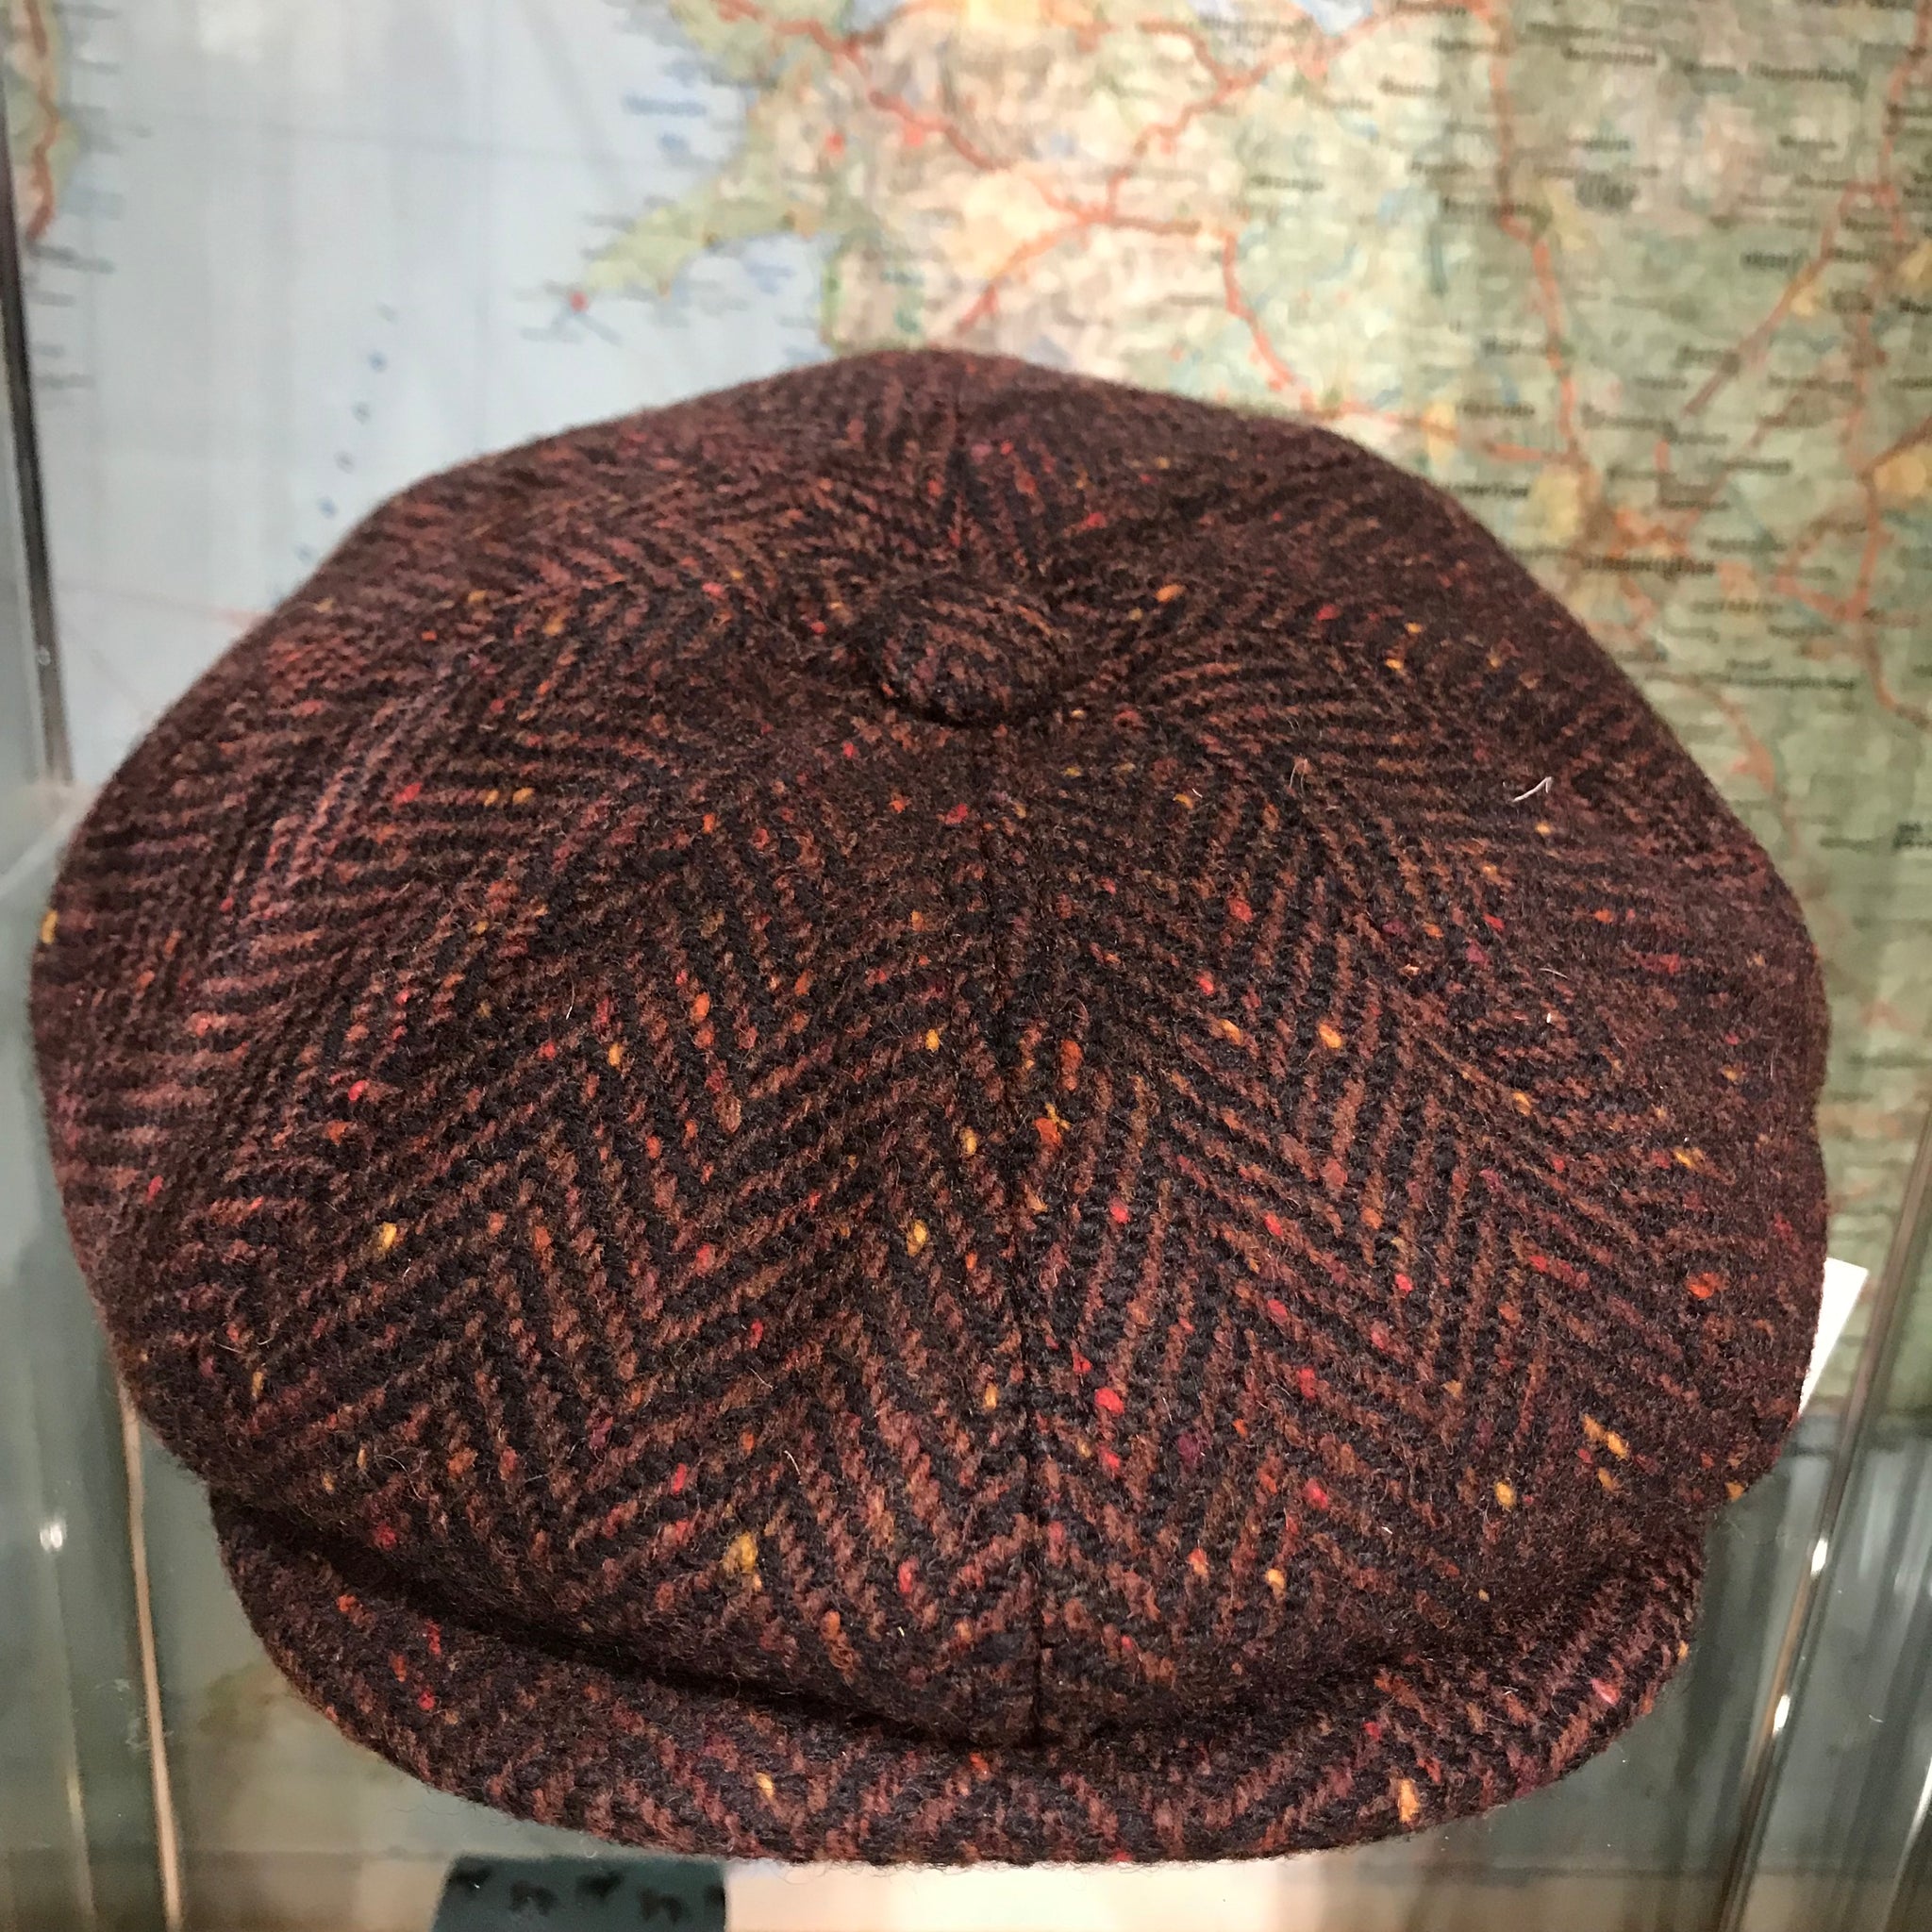 Donegal tweed bakerboy cap